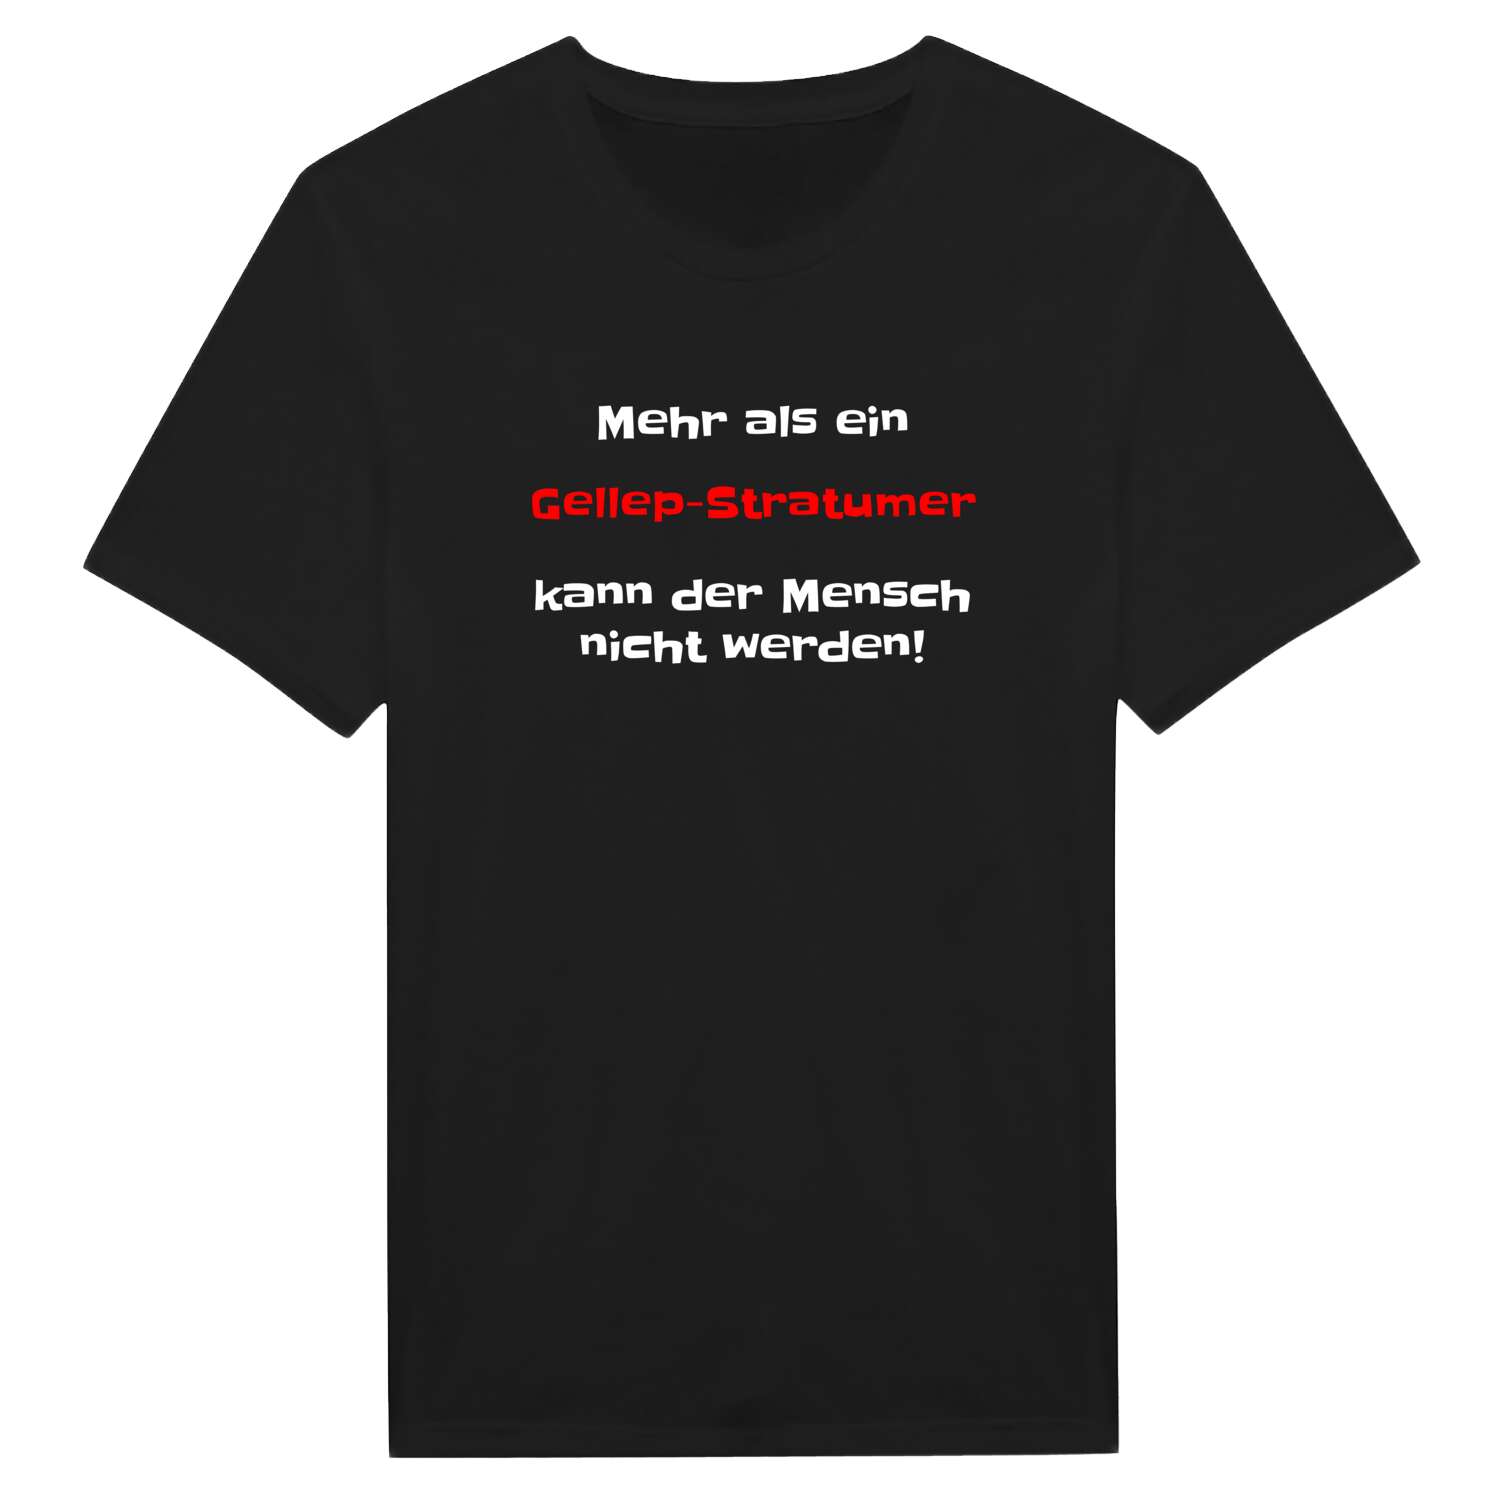 Gellep-Stratum T-Shirt »Mehr als ein«